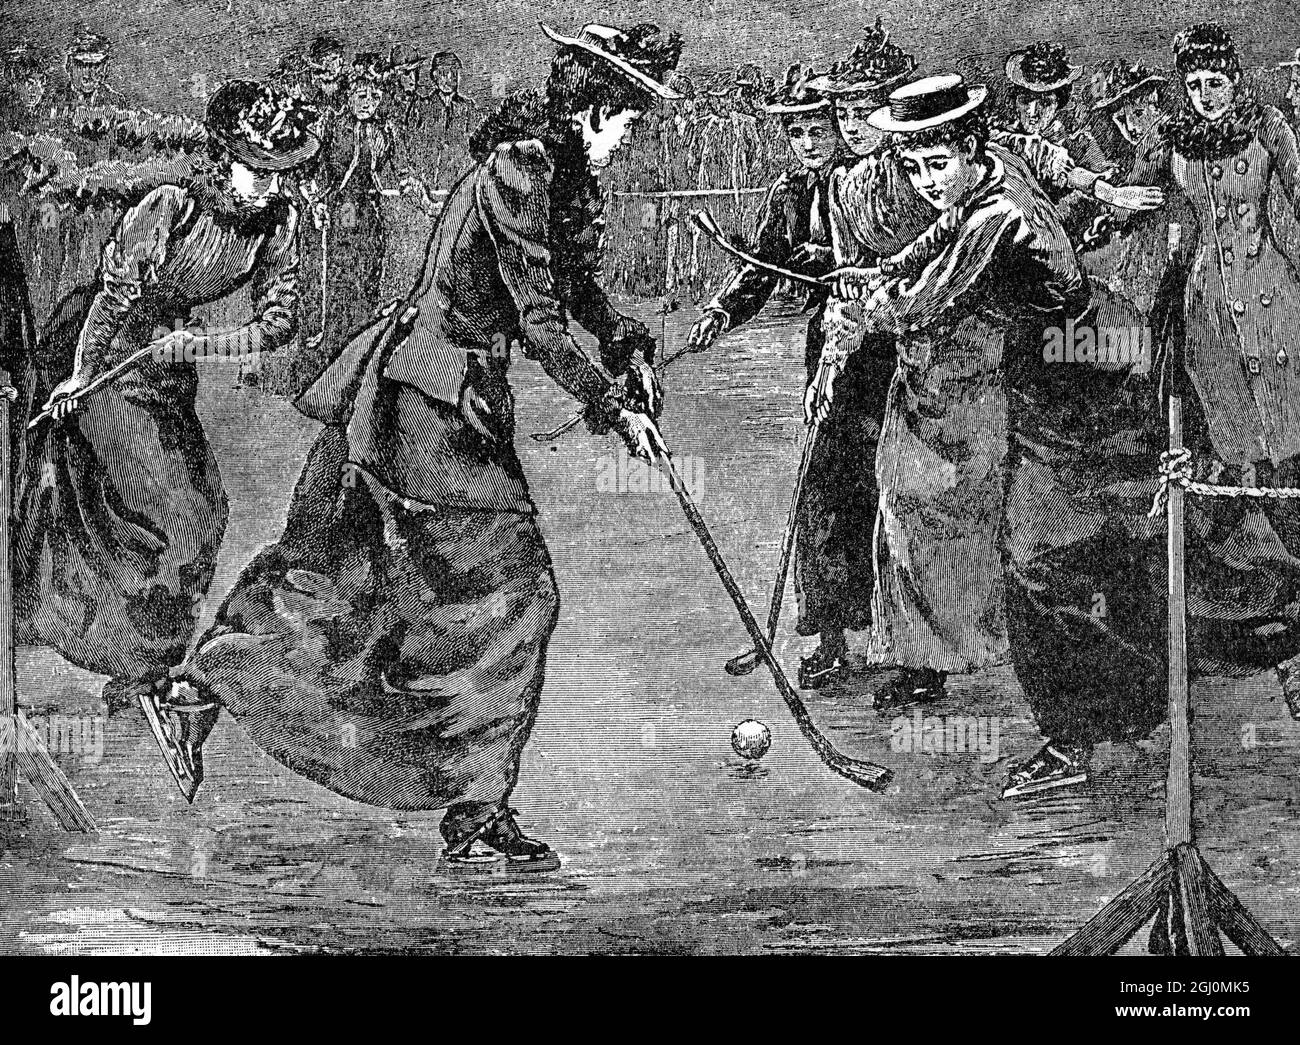 Hockey sur glace à Wimbledon les dames du club de patinage de Wimbledon profitent de leur nouveau privilège de jouer au hockey . Les jupes lâches et coulées de ces Camillas rapides ondulent doucement d'un côté à l'autre en réponse au mouvement de patinage . 1893 Banque D'Images